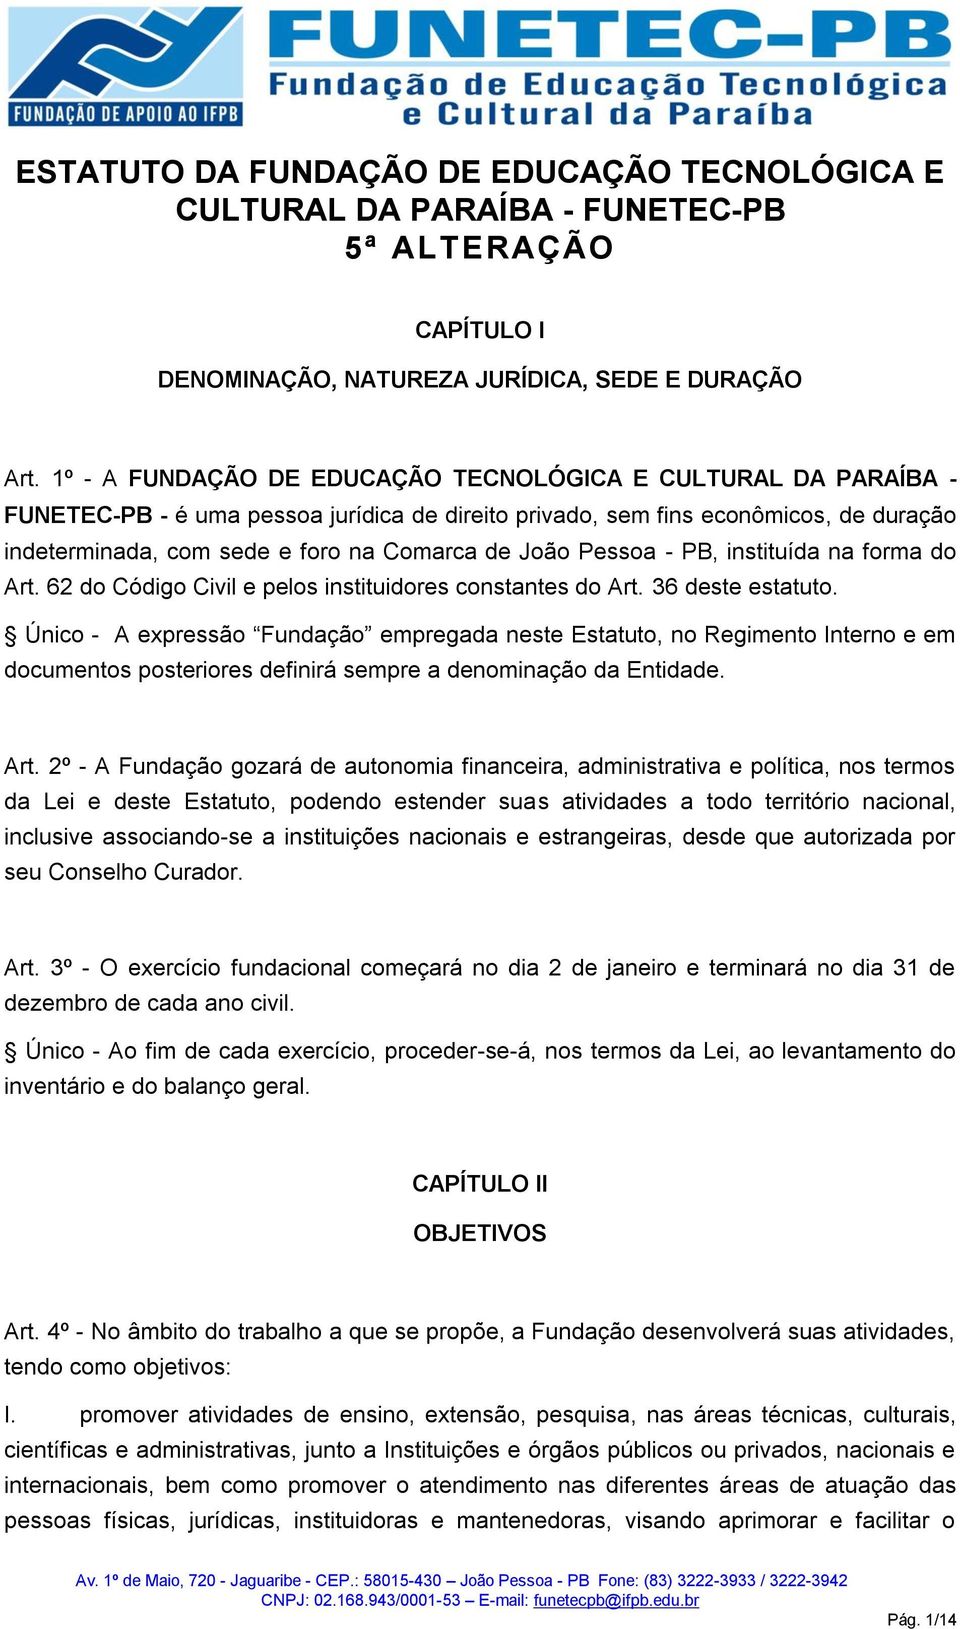 João Pessoa - PB, instituída na forma do Art. 62 do Código Civil e pelos instituidores constantes do Art. 36 deste estatuto.